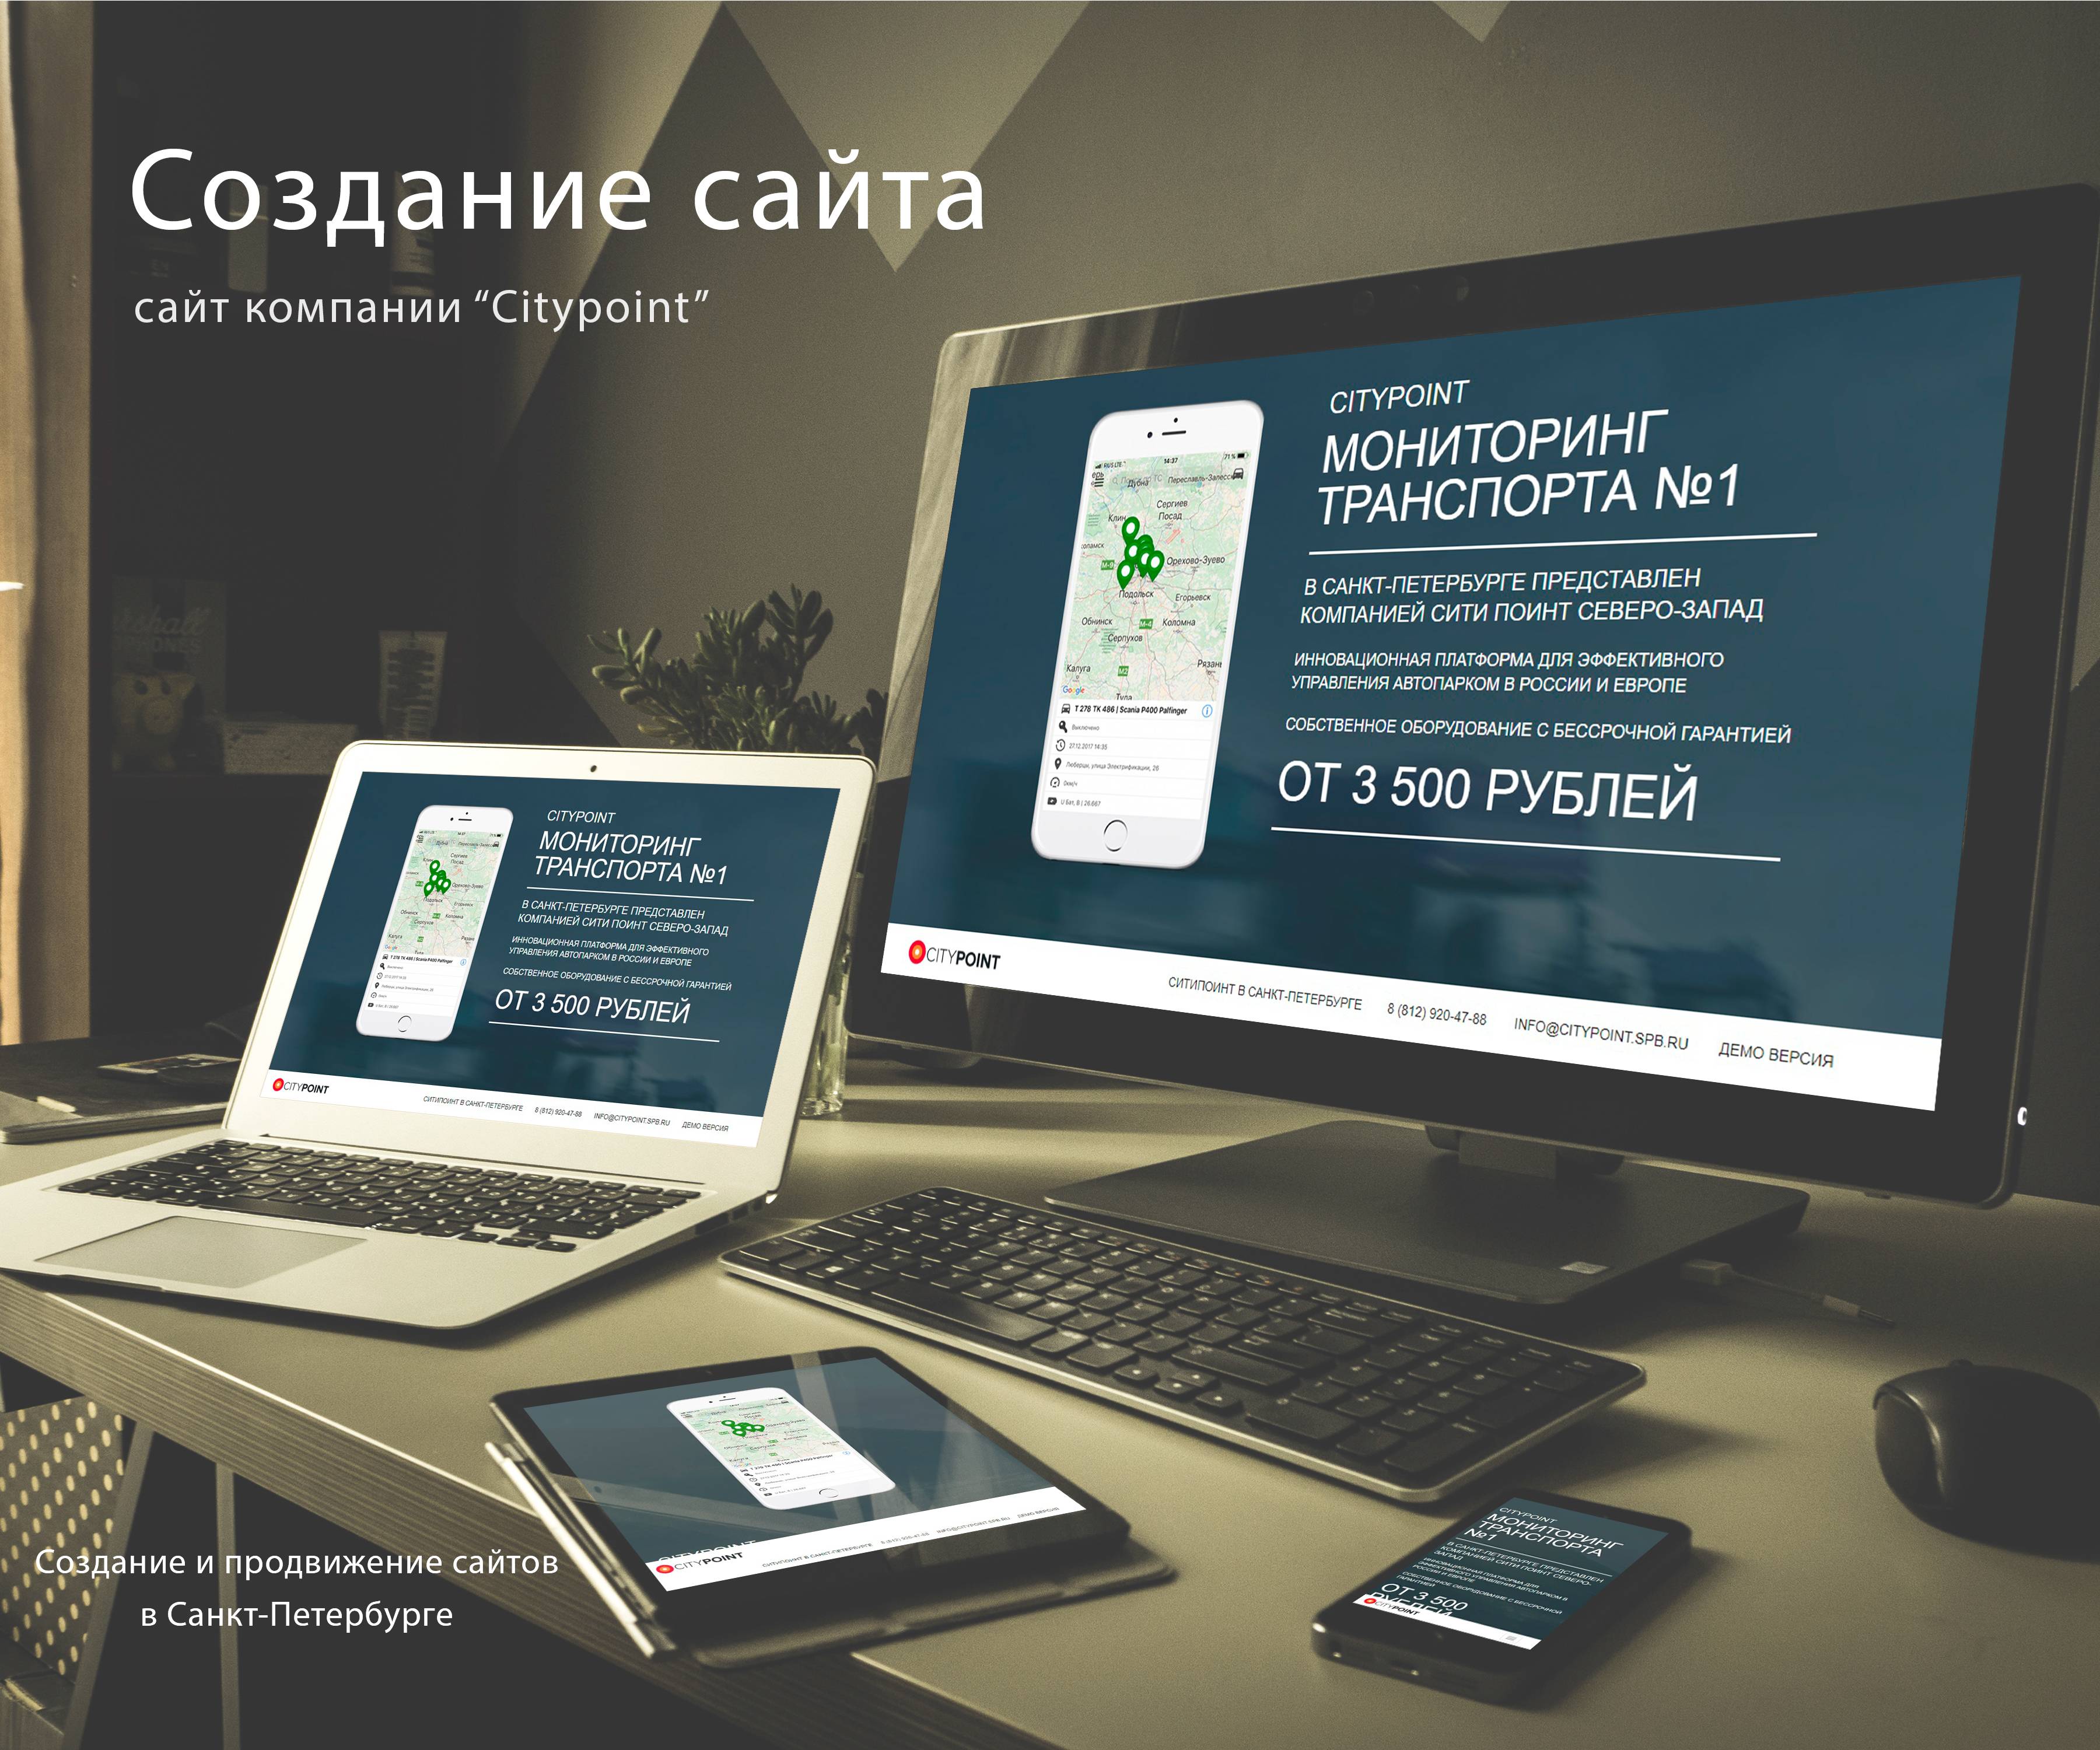 Создание сайтов в москве цена самых